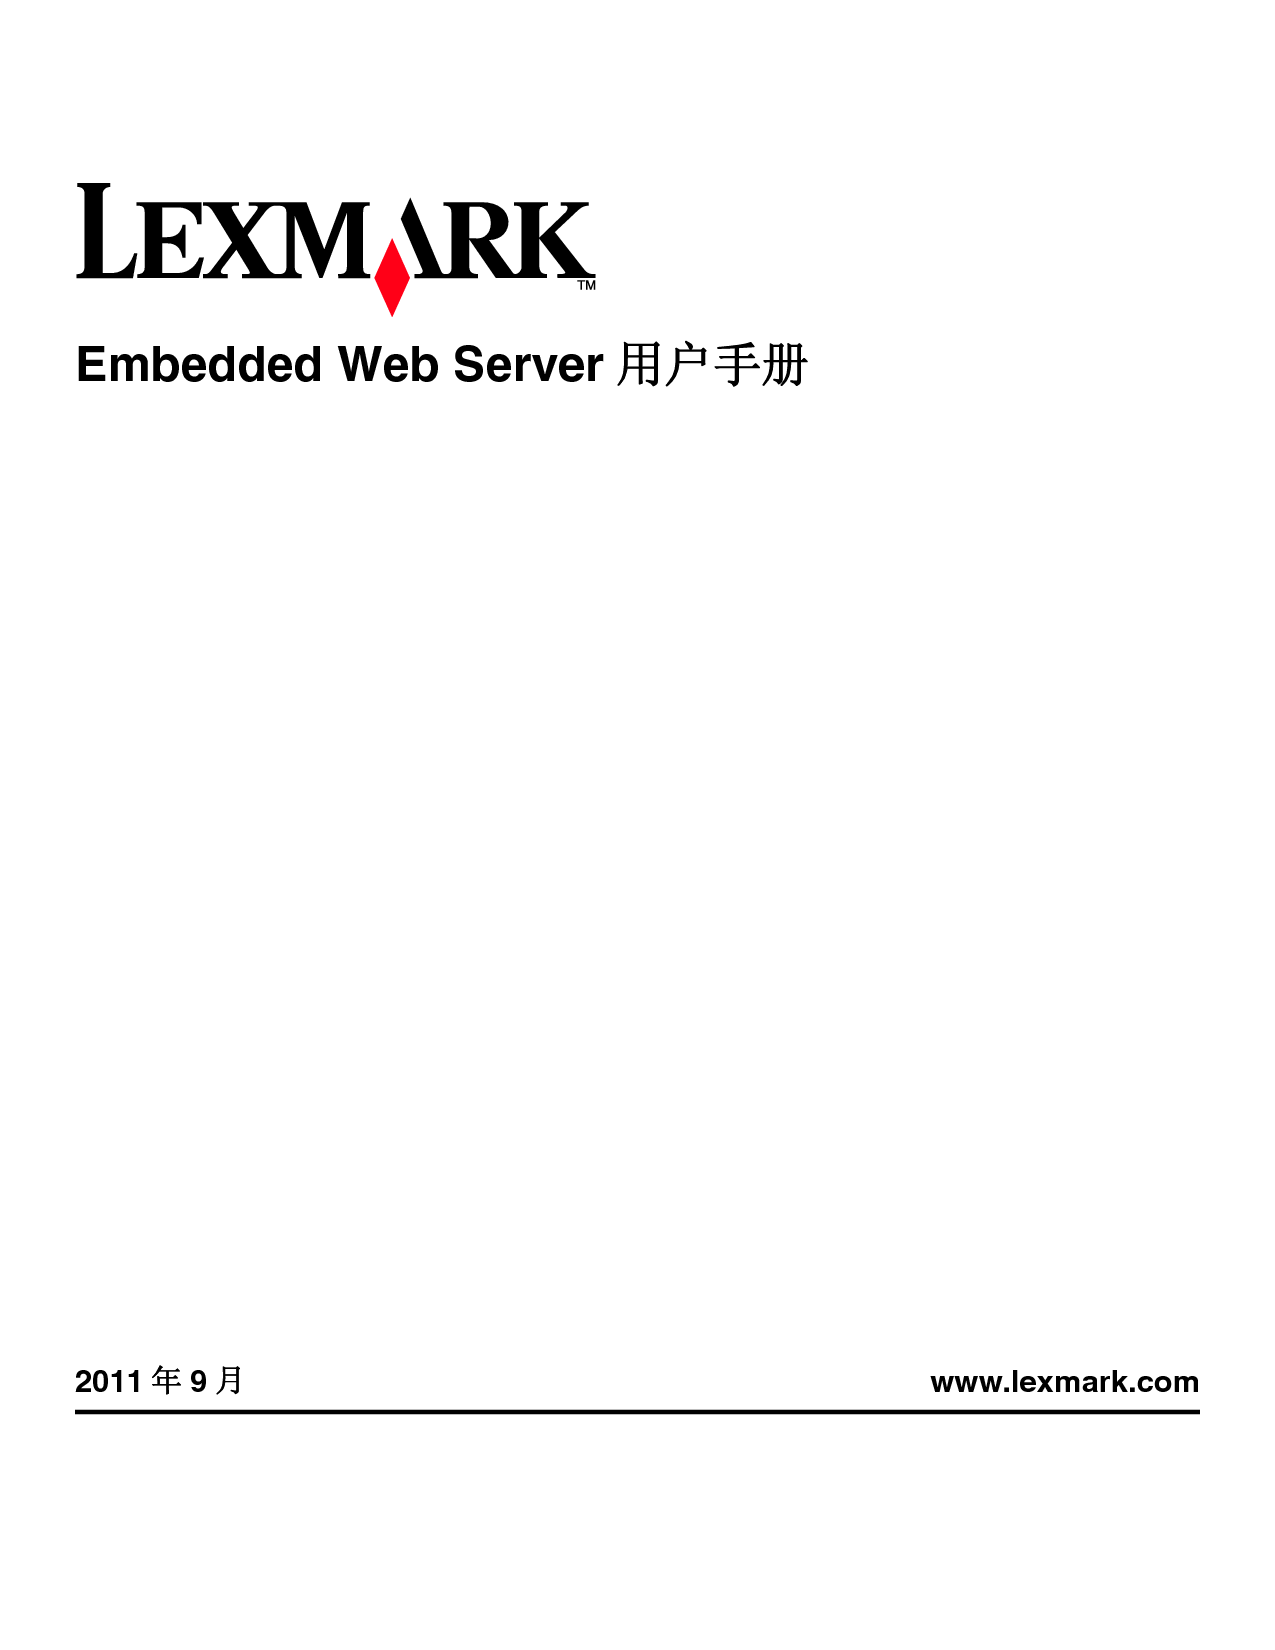 利盟 Lexmark 嵌入式Web服务器 用户手册 封面